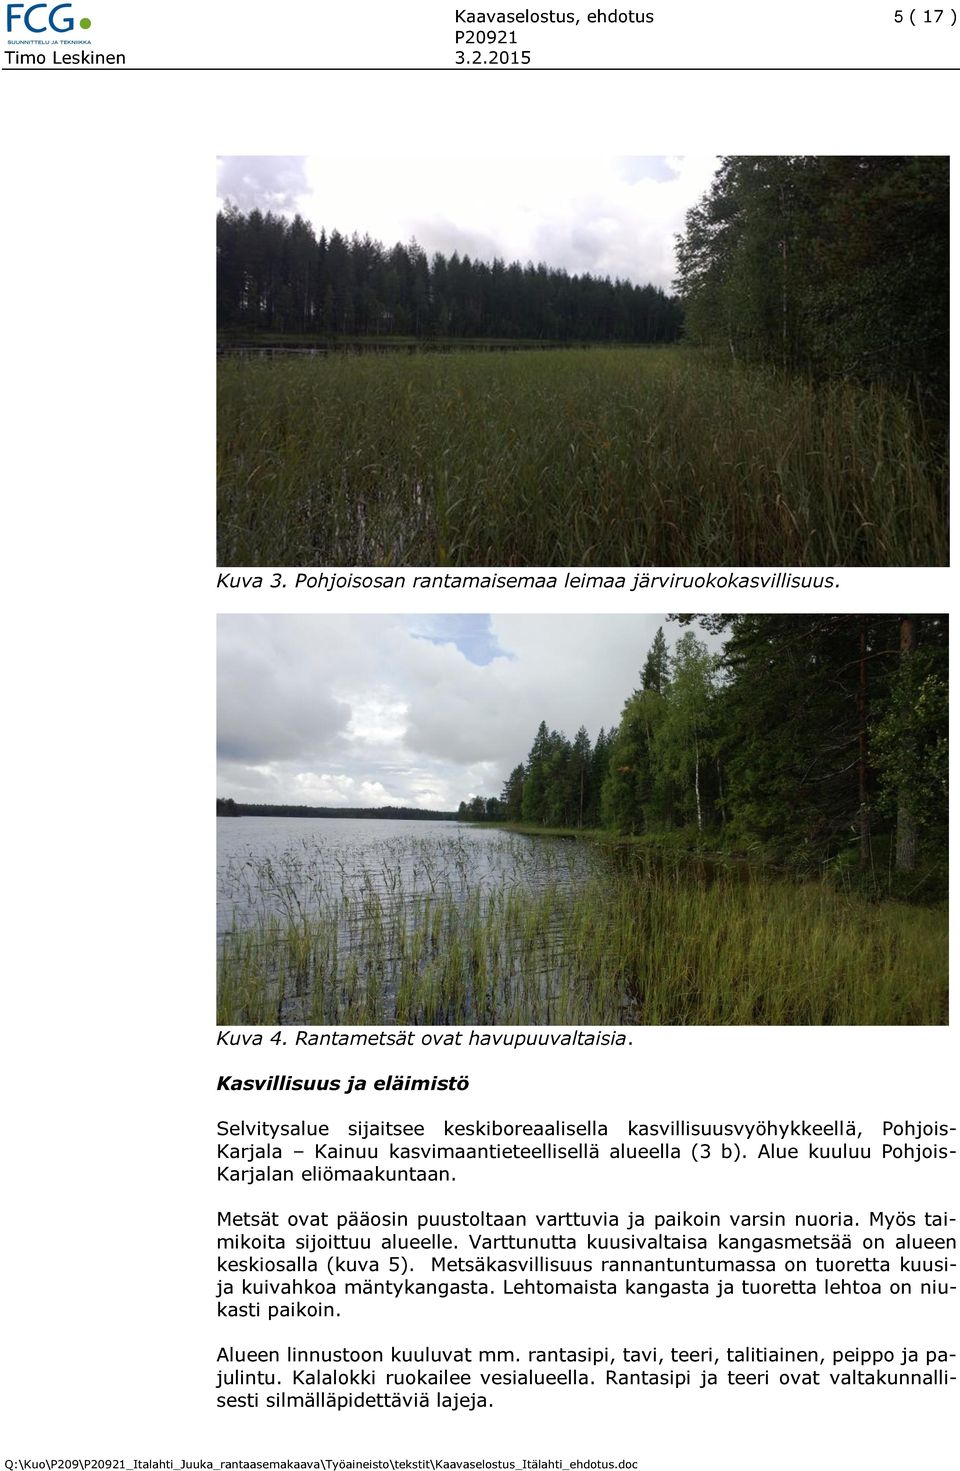 Alue kuuluu Pohjois- Karjalan eliömaakuntaan. Metsät ovat pääosin puustoltaan varttuvia ja paikoin varsin nuoria. Myös taimikoita sijoittuu alueelle.